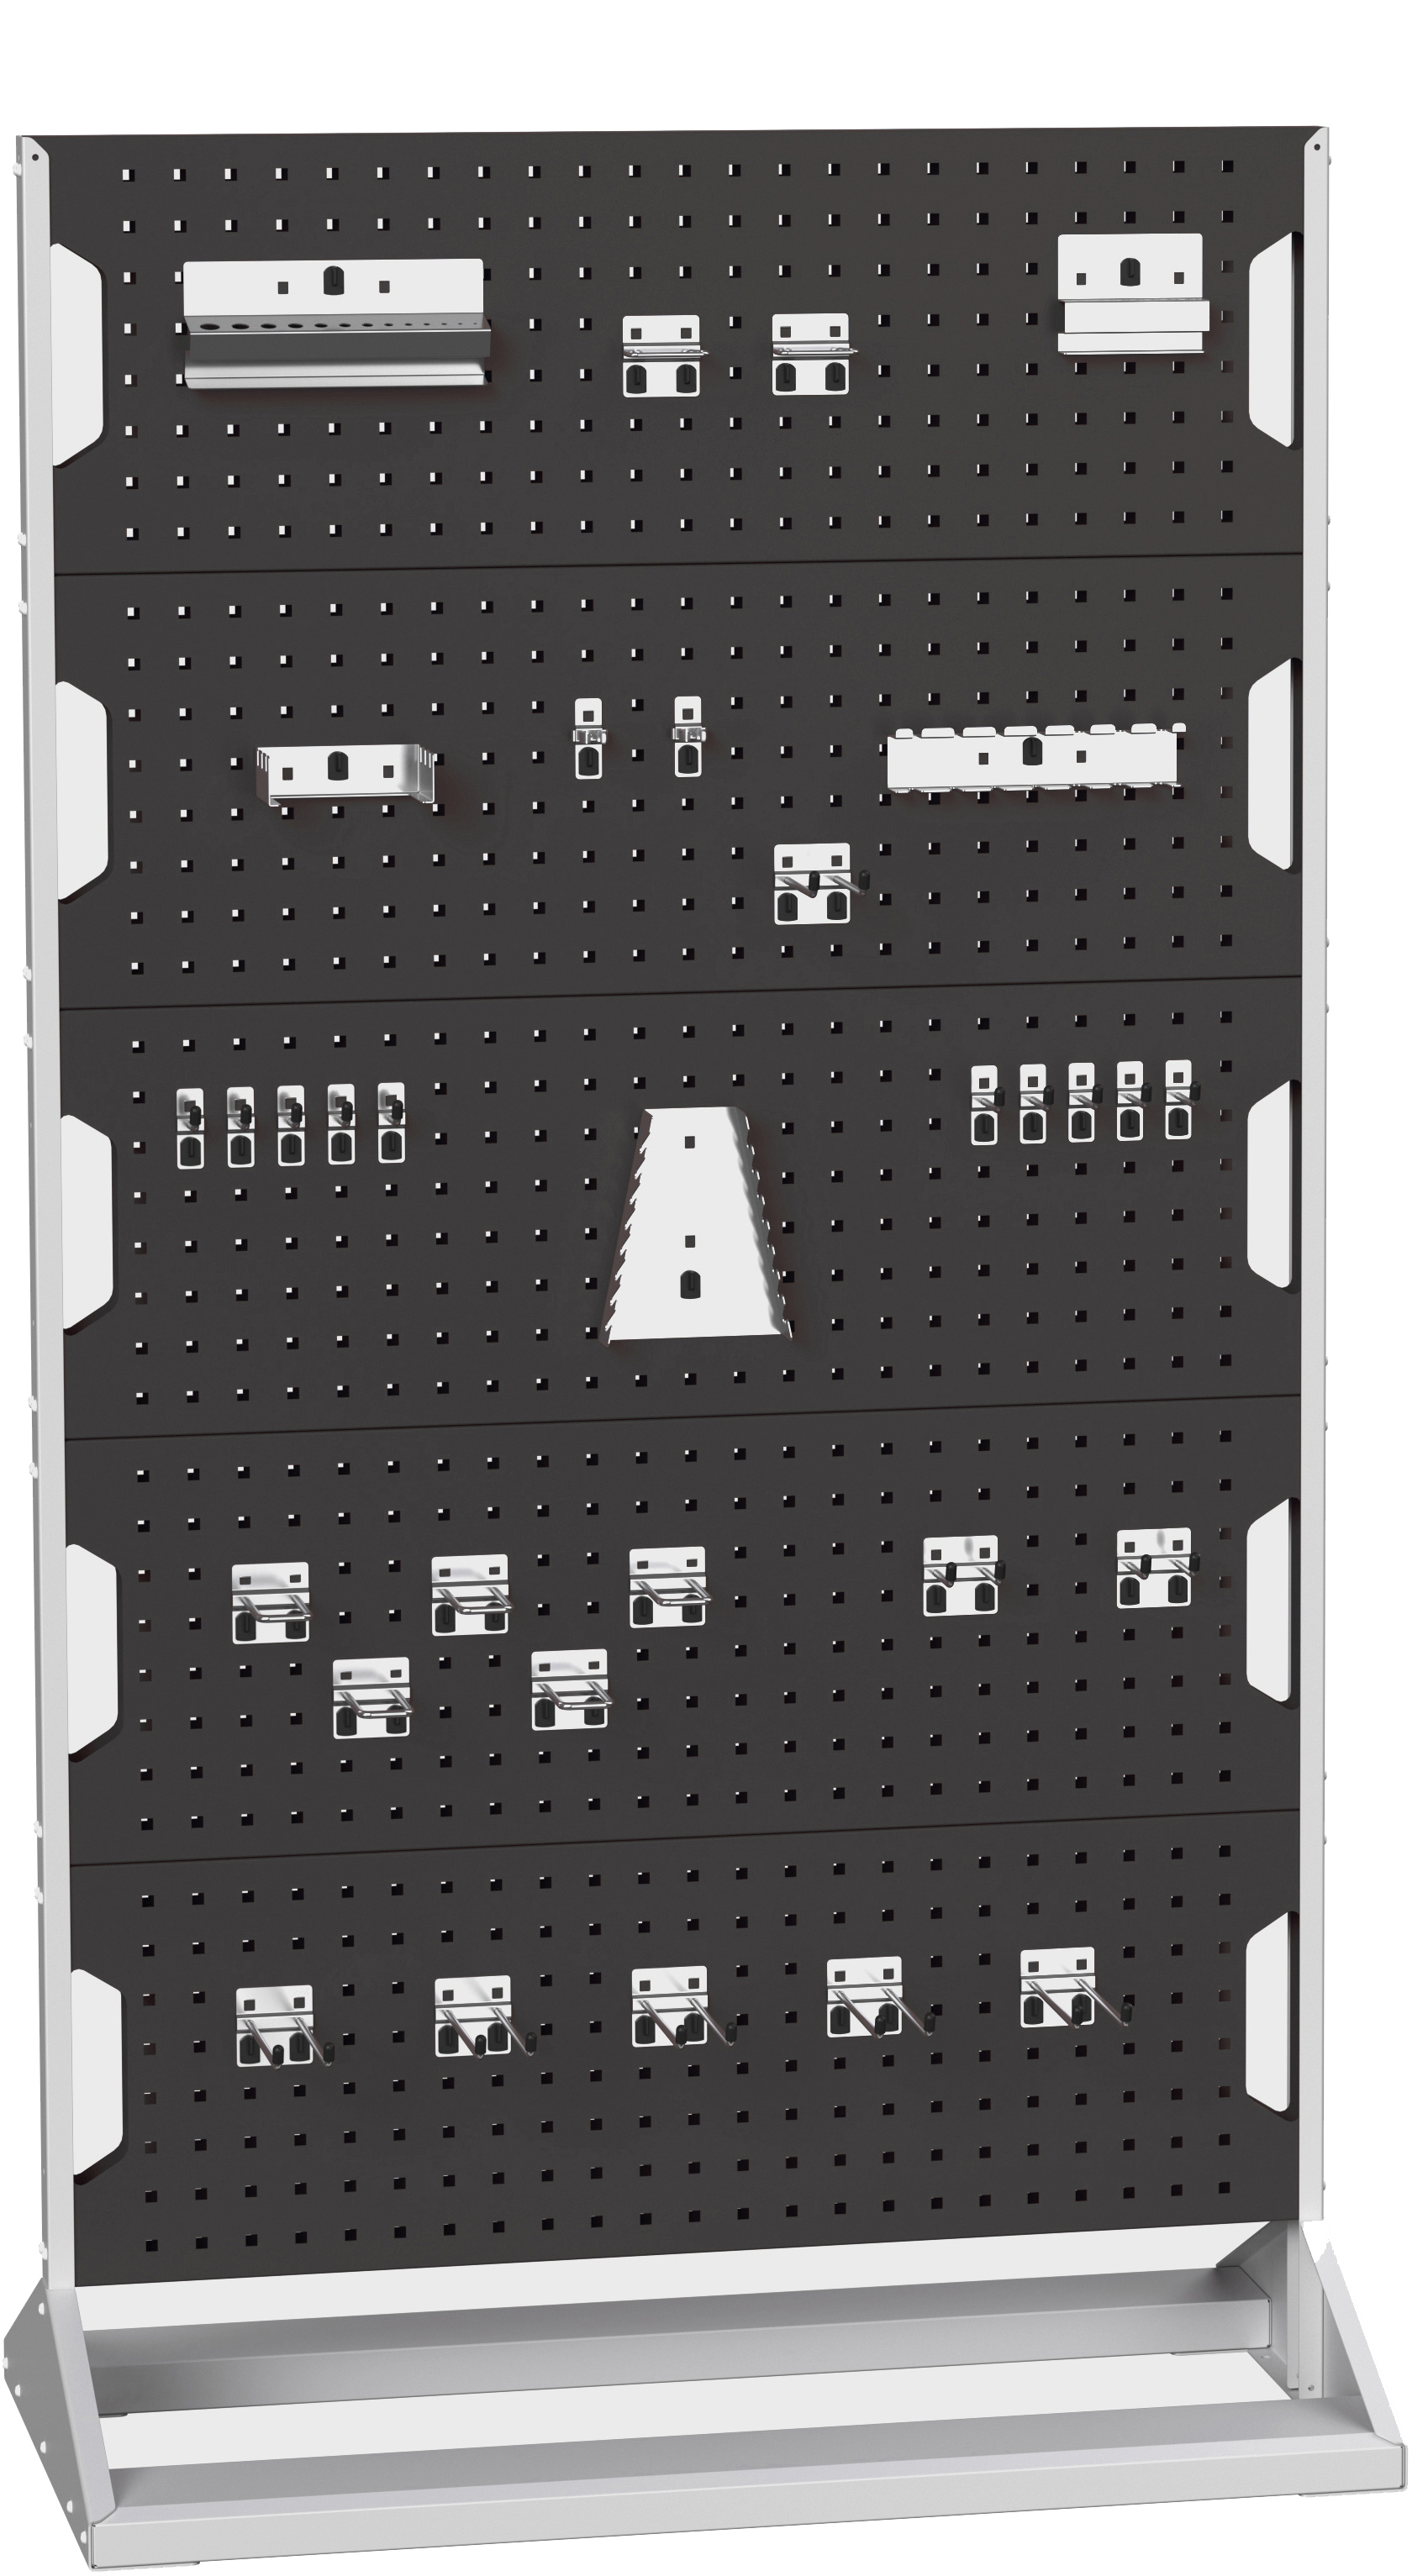 Bott Perfo Panel Rack (Double Sided) - 16917202.19V